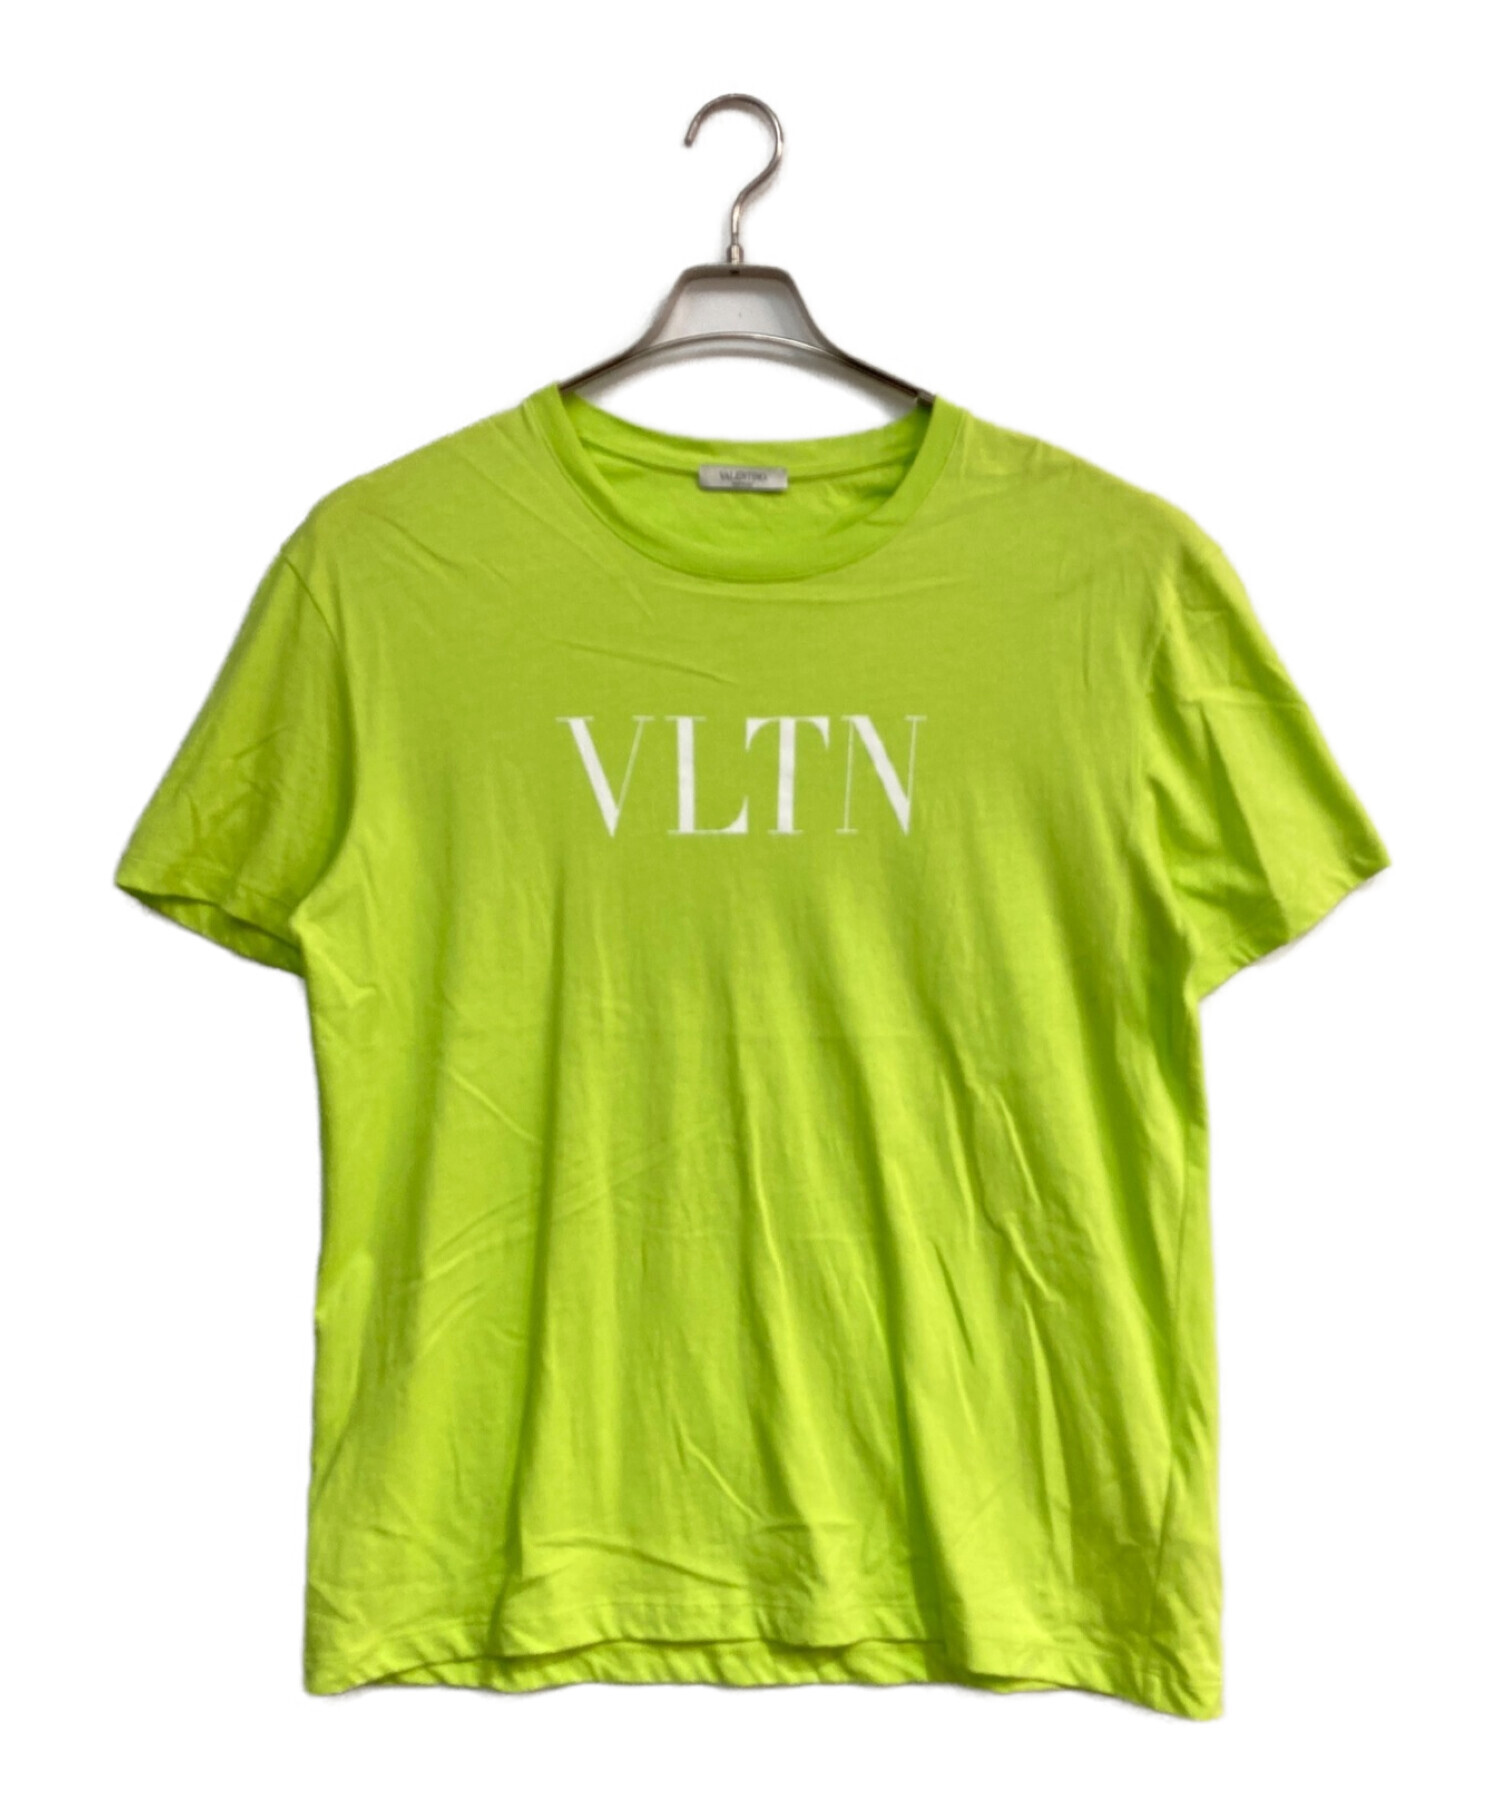 中古・古着通販】VALENTINO (ヴァレンティノ) VLTNロゴプリントTシャツ